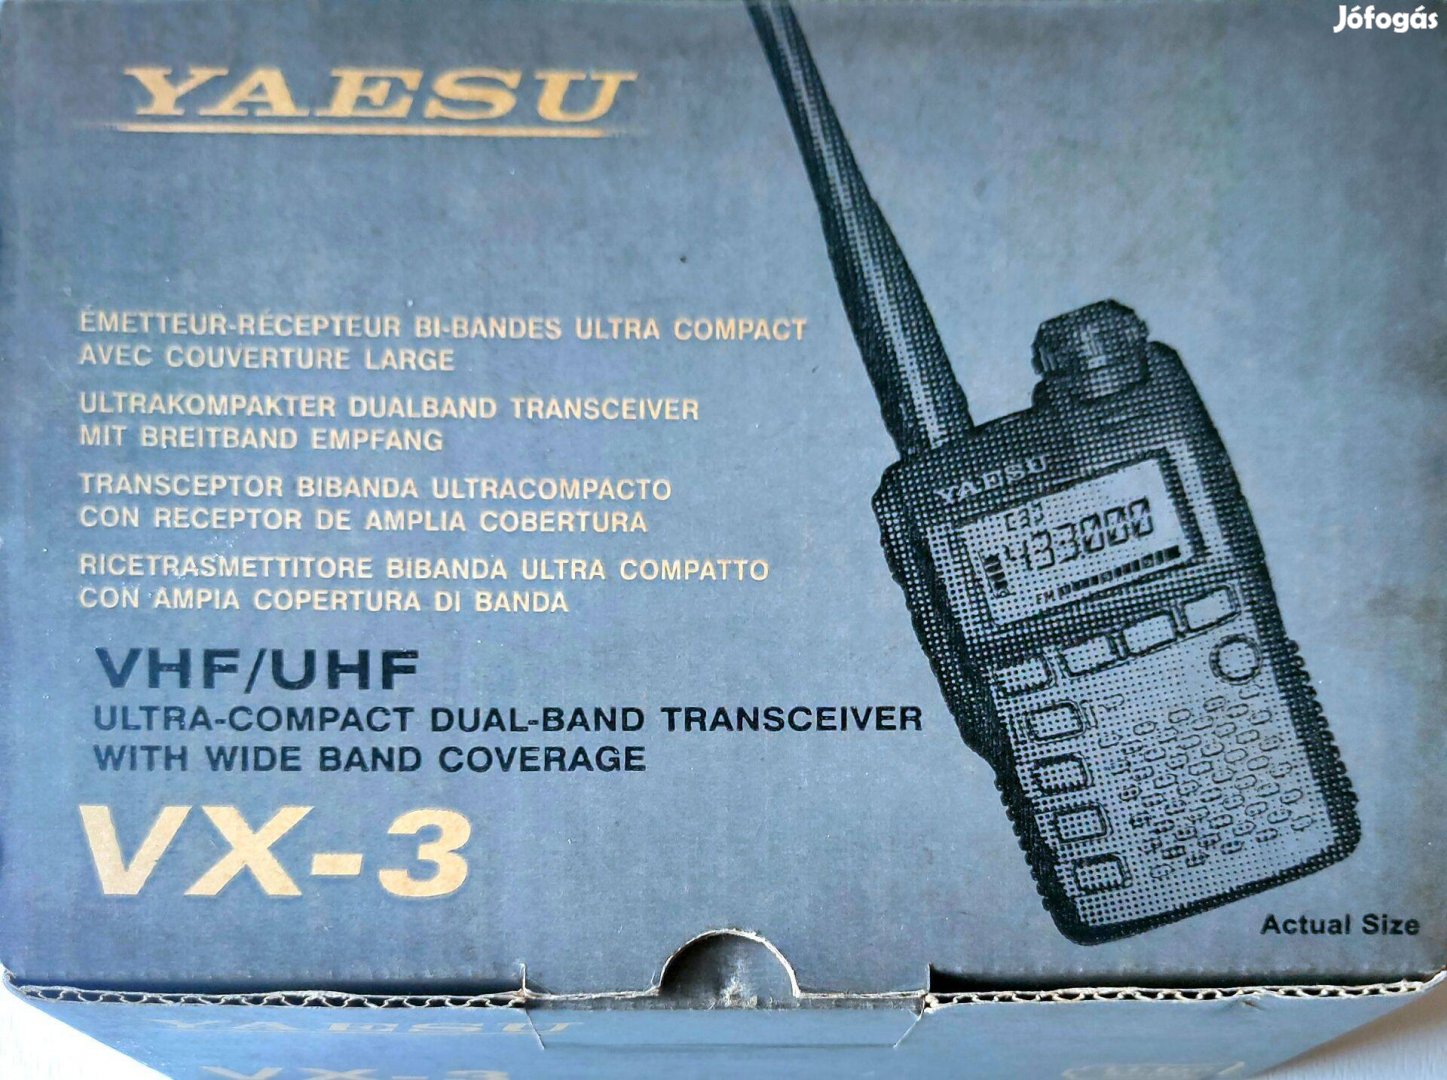 Yaesu Vx3 a legkisebb profi adóvevő és scanner rádió a piacon